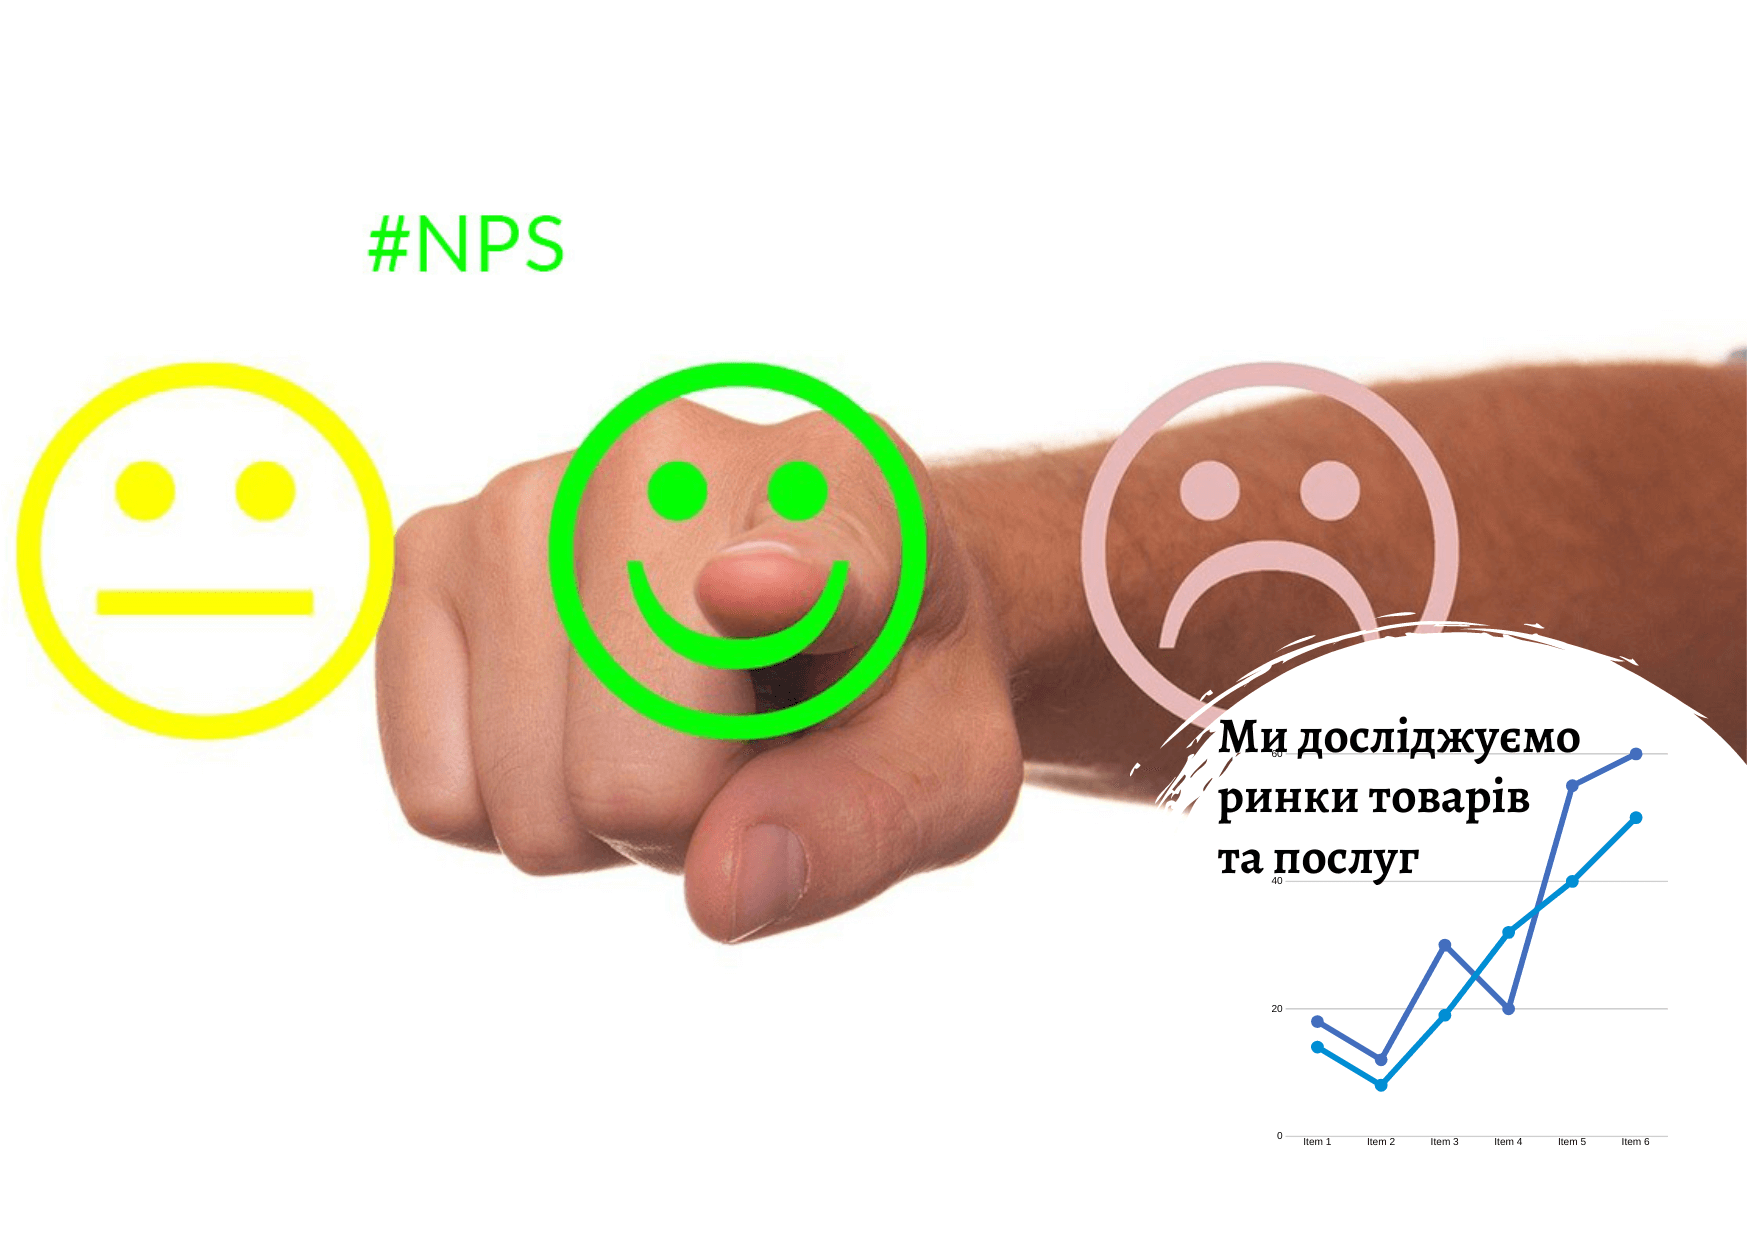 NPS-опитування виявить ставлення споживачів до вашого продукту